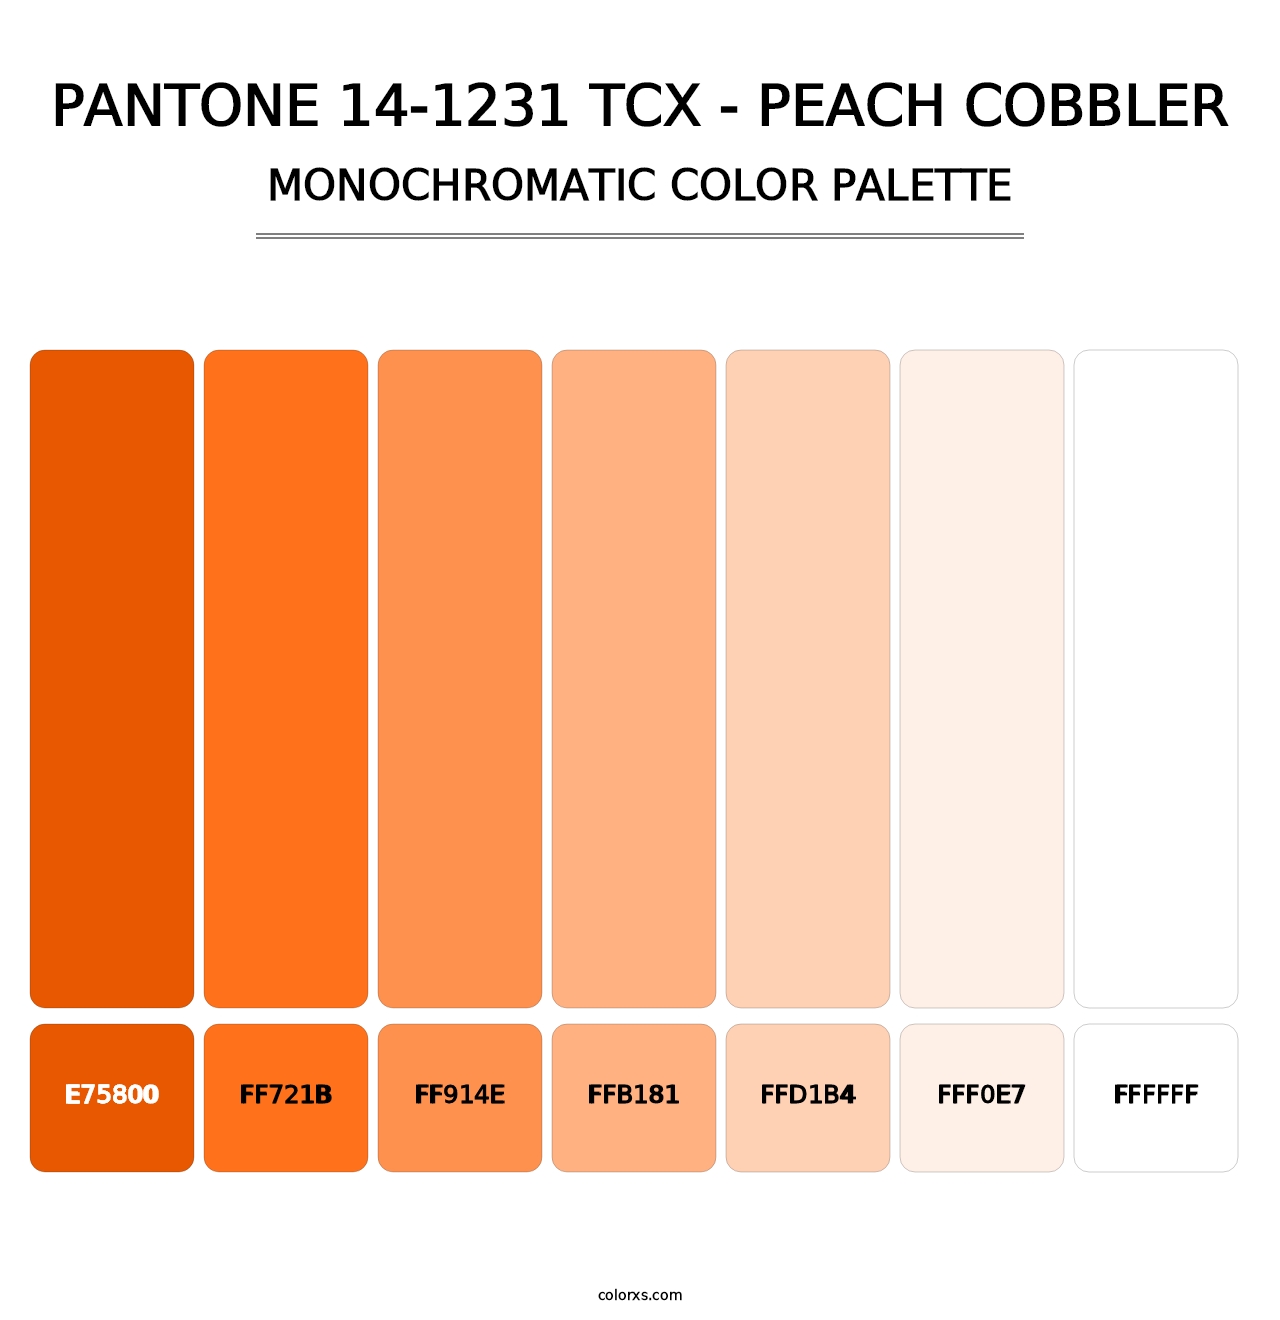 PANTONE 14-1231 TCX - Peach Cobbler - Monochromatic Color Palette